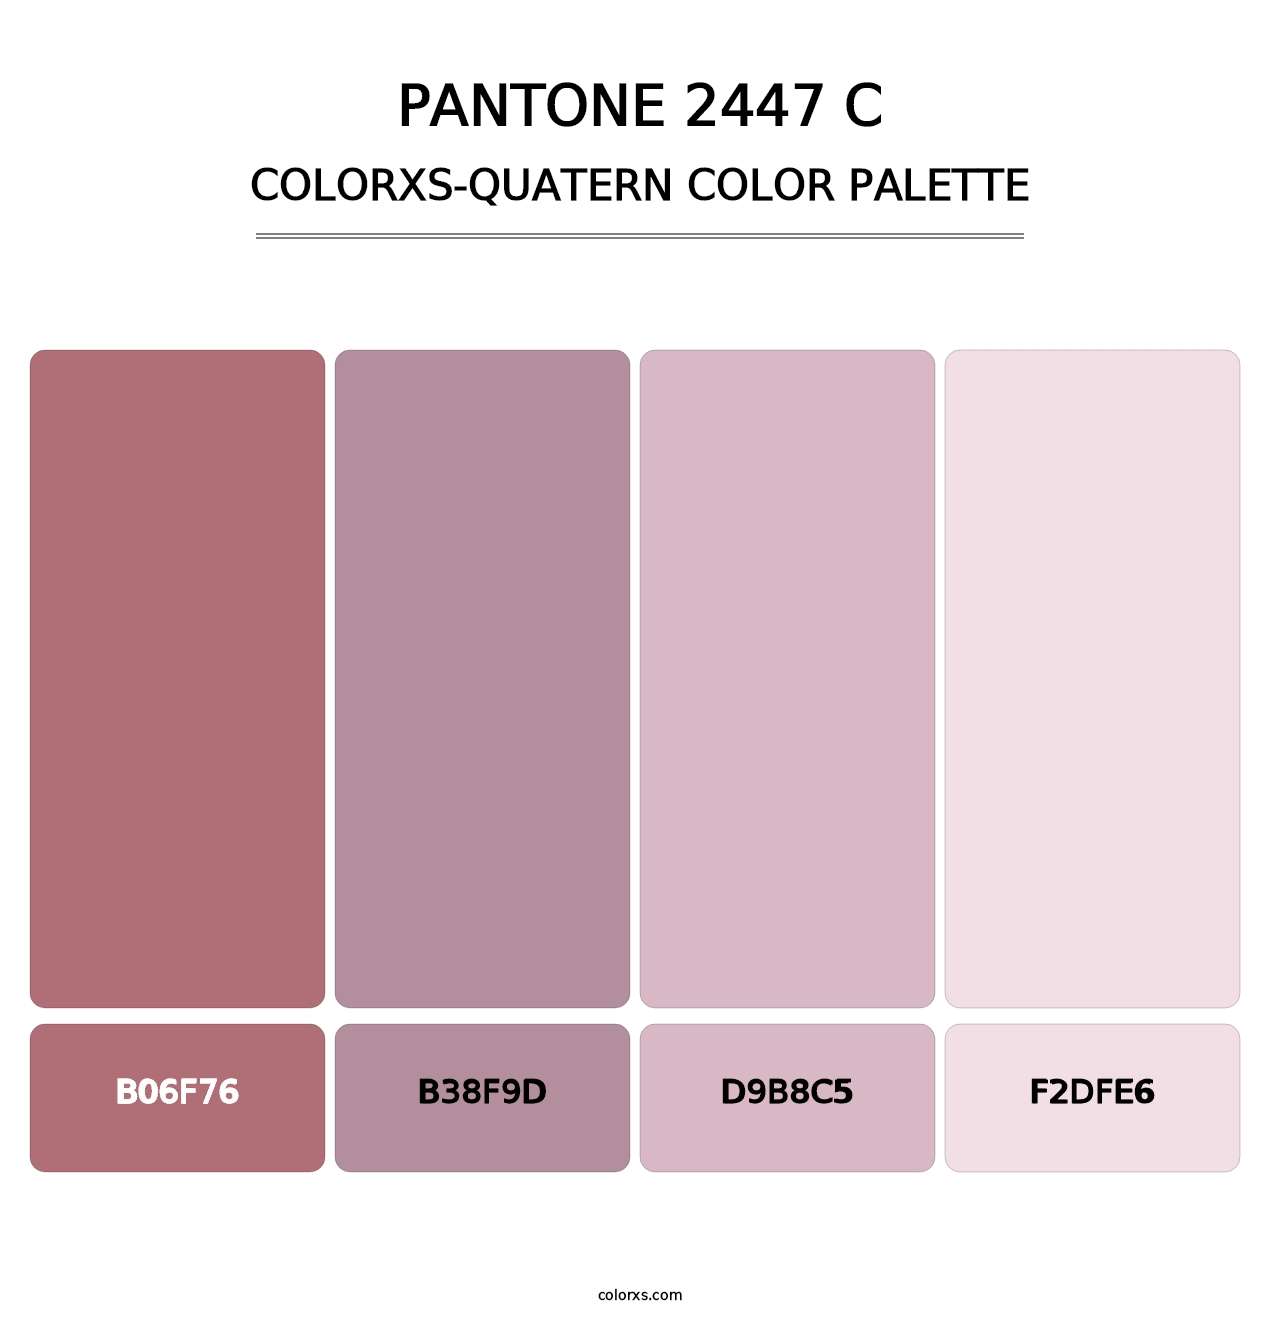 PANTONE 2447 C - Colorxs Quatern Palette